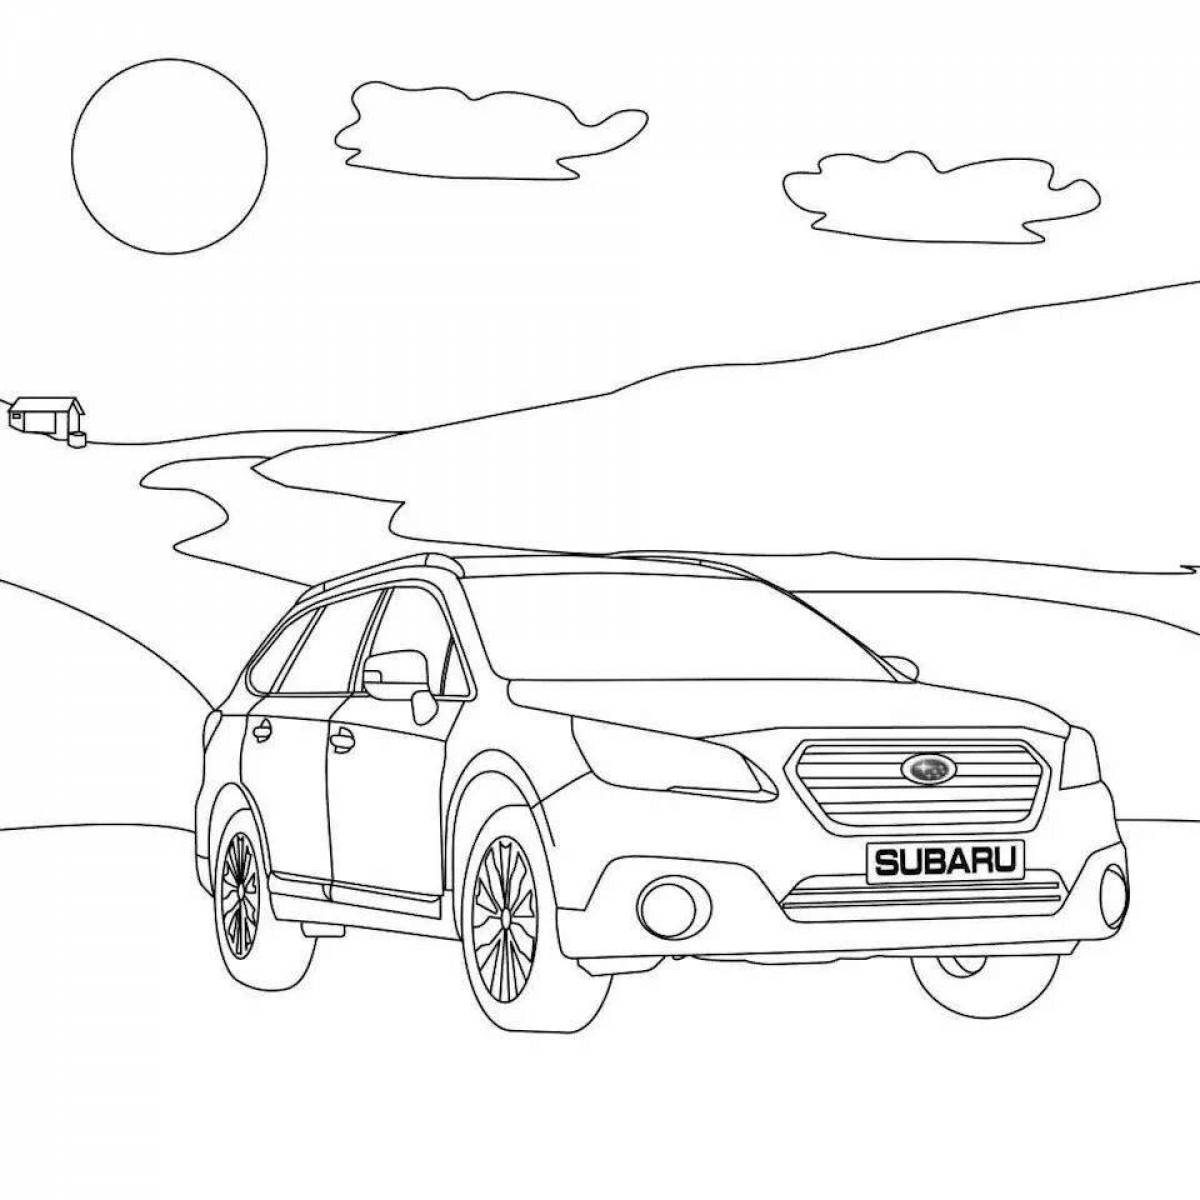 Subaru coloring page